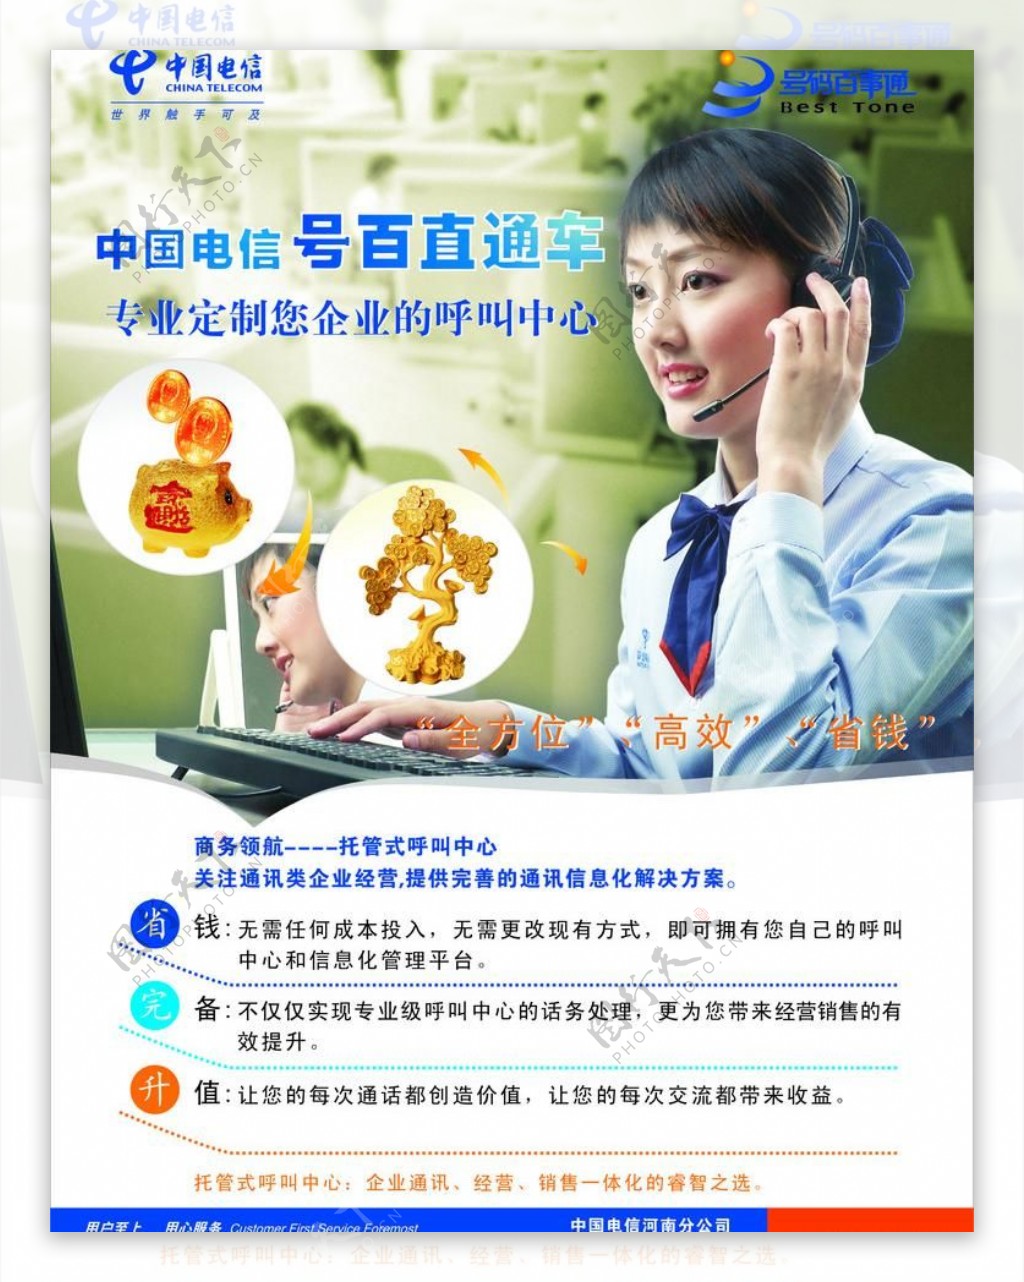 中国电信号百直通车宣传页图片